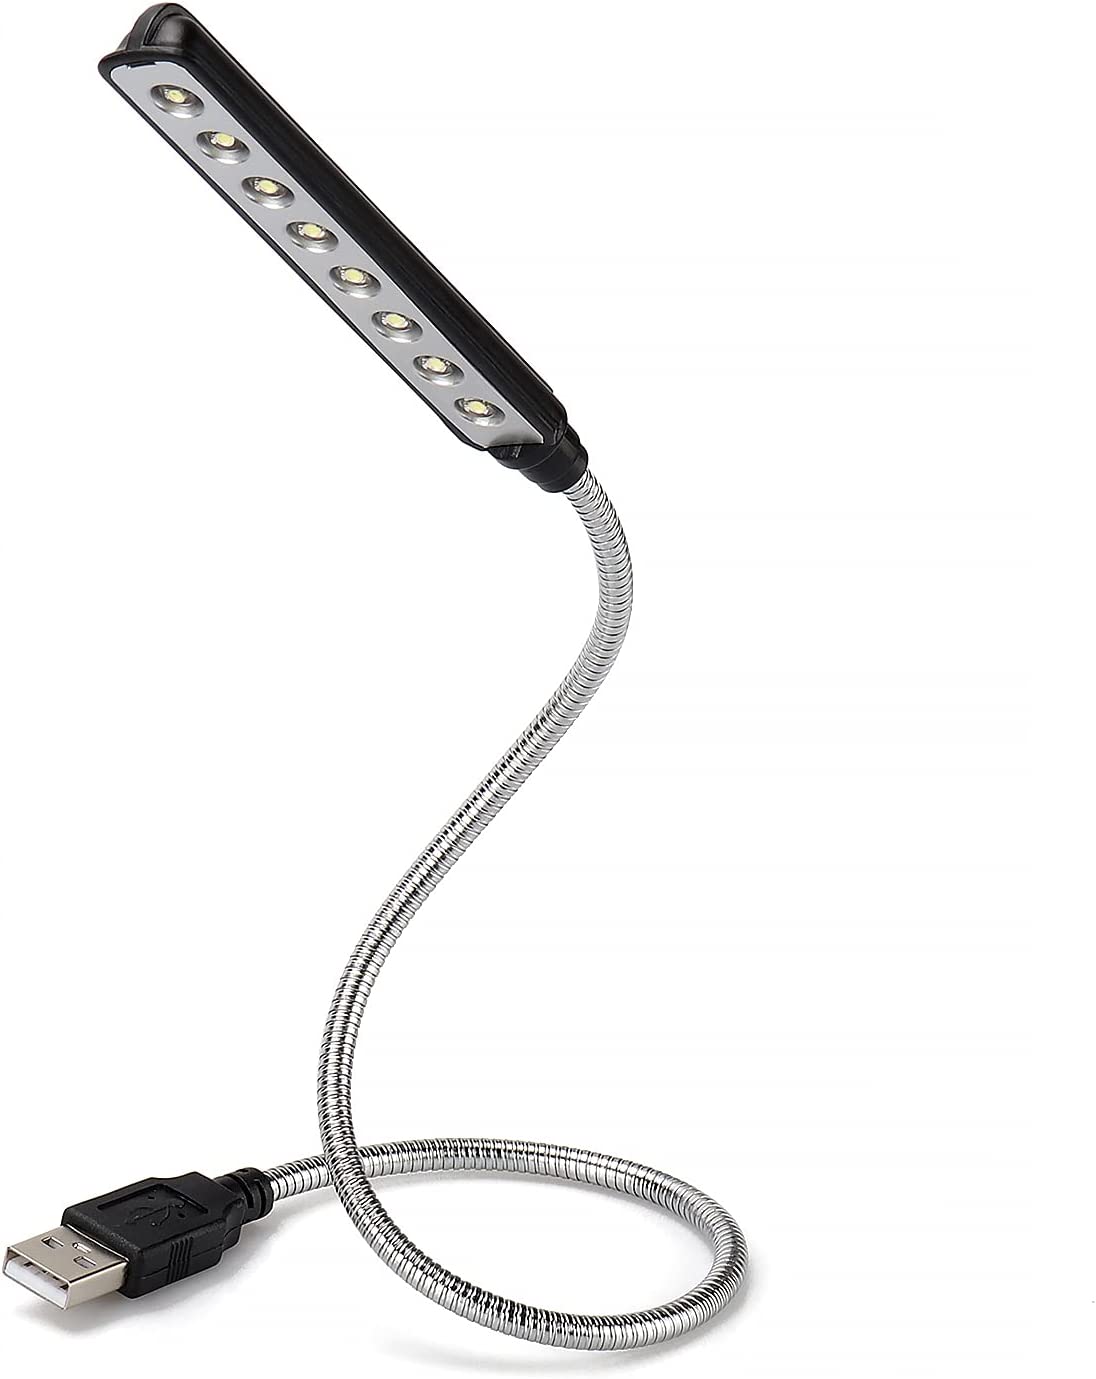 수선화 USB LED 라이트 - 슈퍼 브라이트 LED 독서등 8개 - 배터리 불필요 - PC & Mac 호환 (ULT05 블랙)